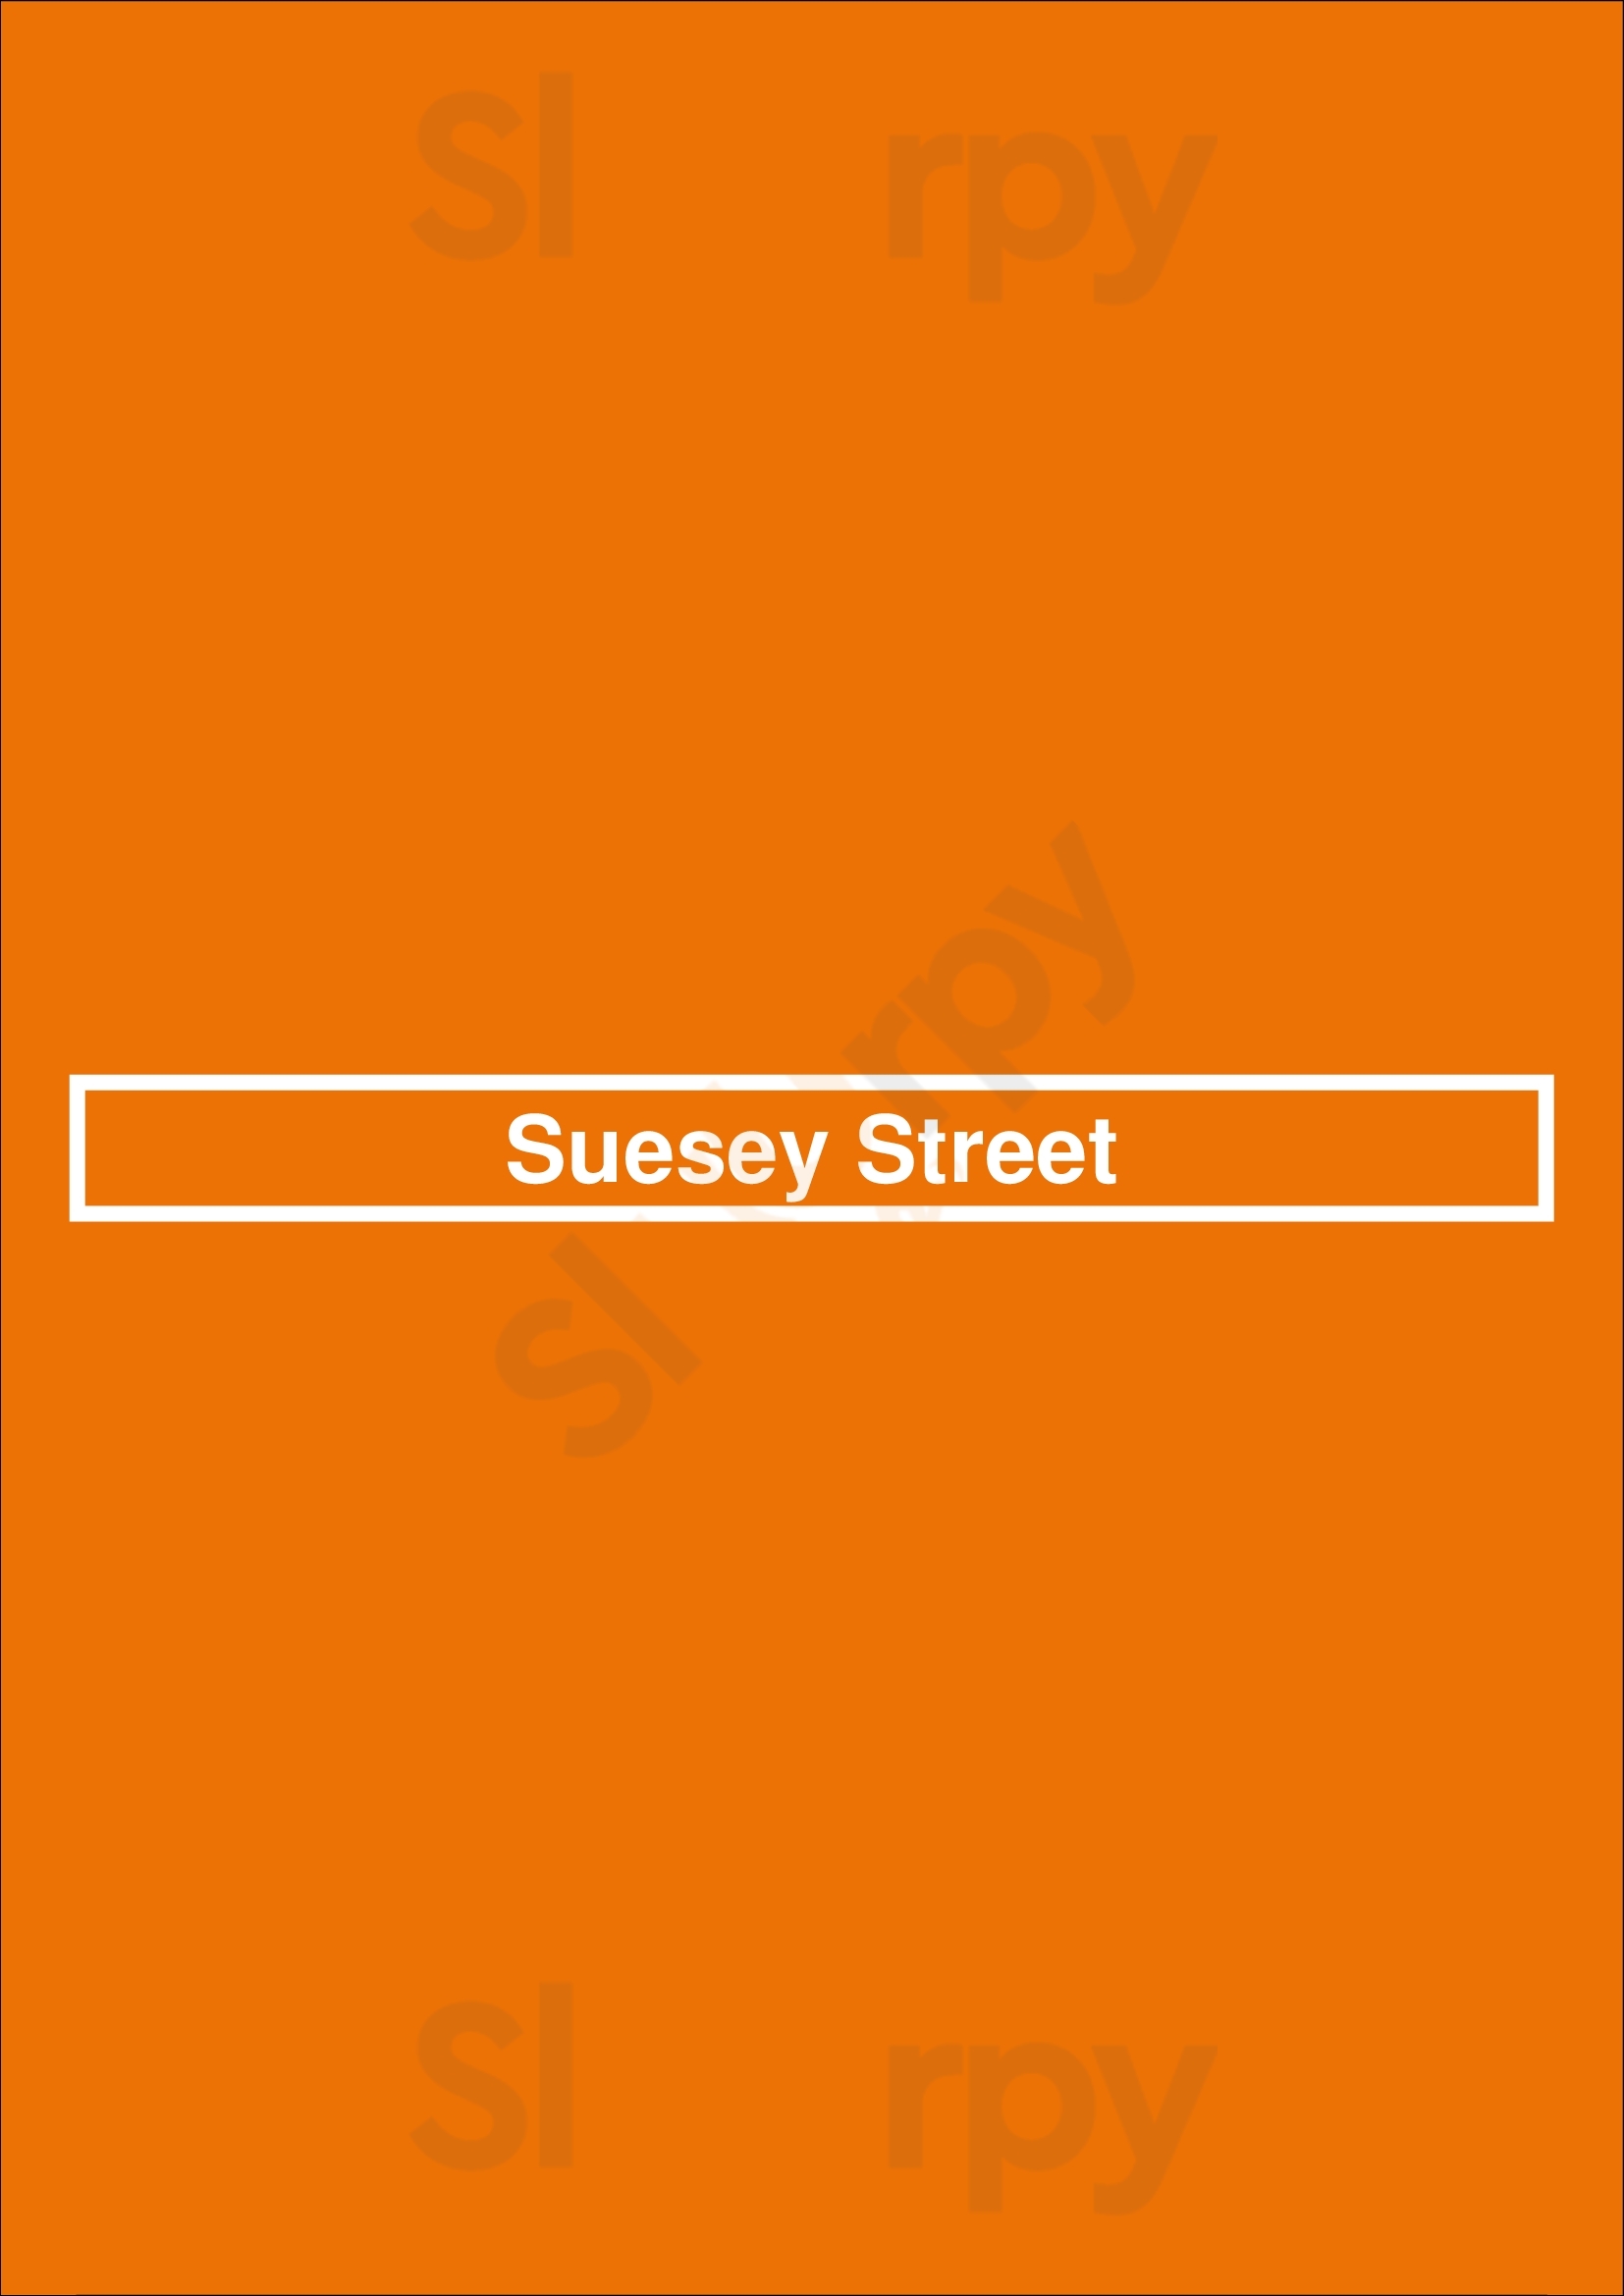 Suesey Street Dublin Menu - 1